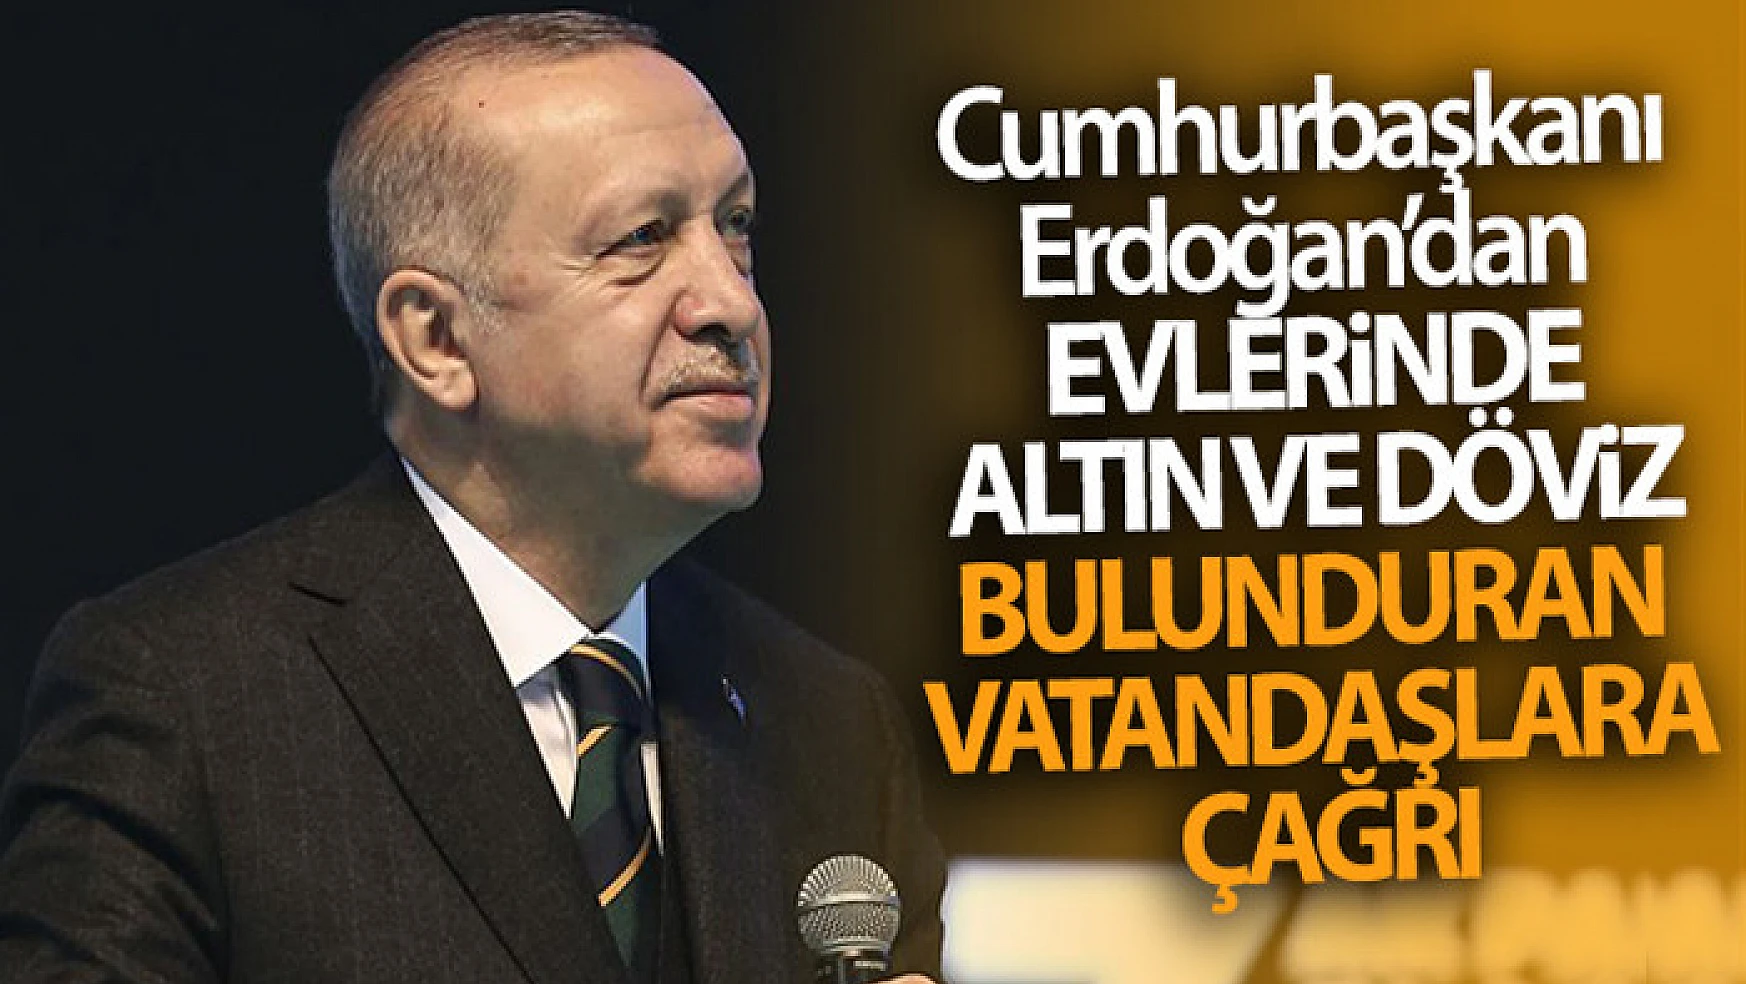 Cumhurbaşkanı Erdoğan'dan evlerinde altın ve döviz bulunduran vatandaşlara çağrı